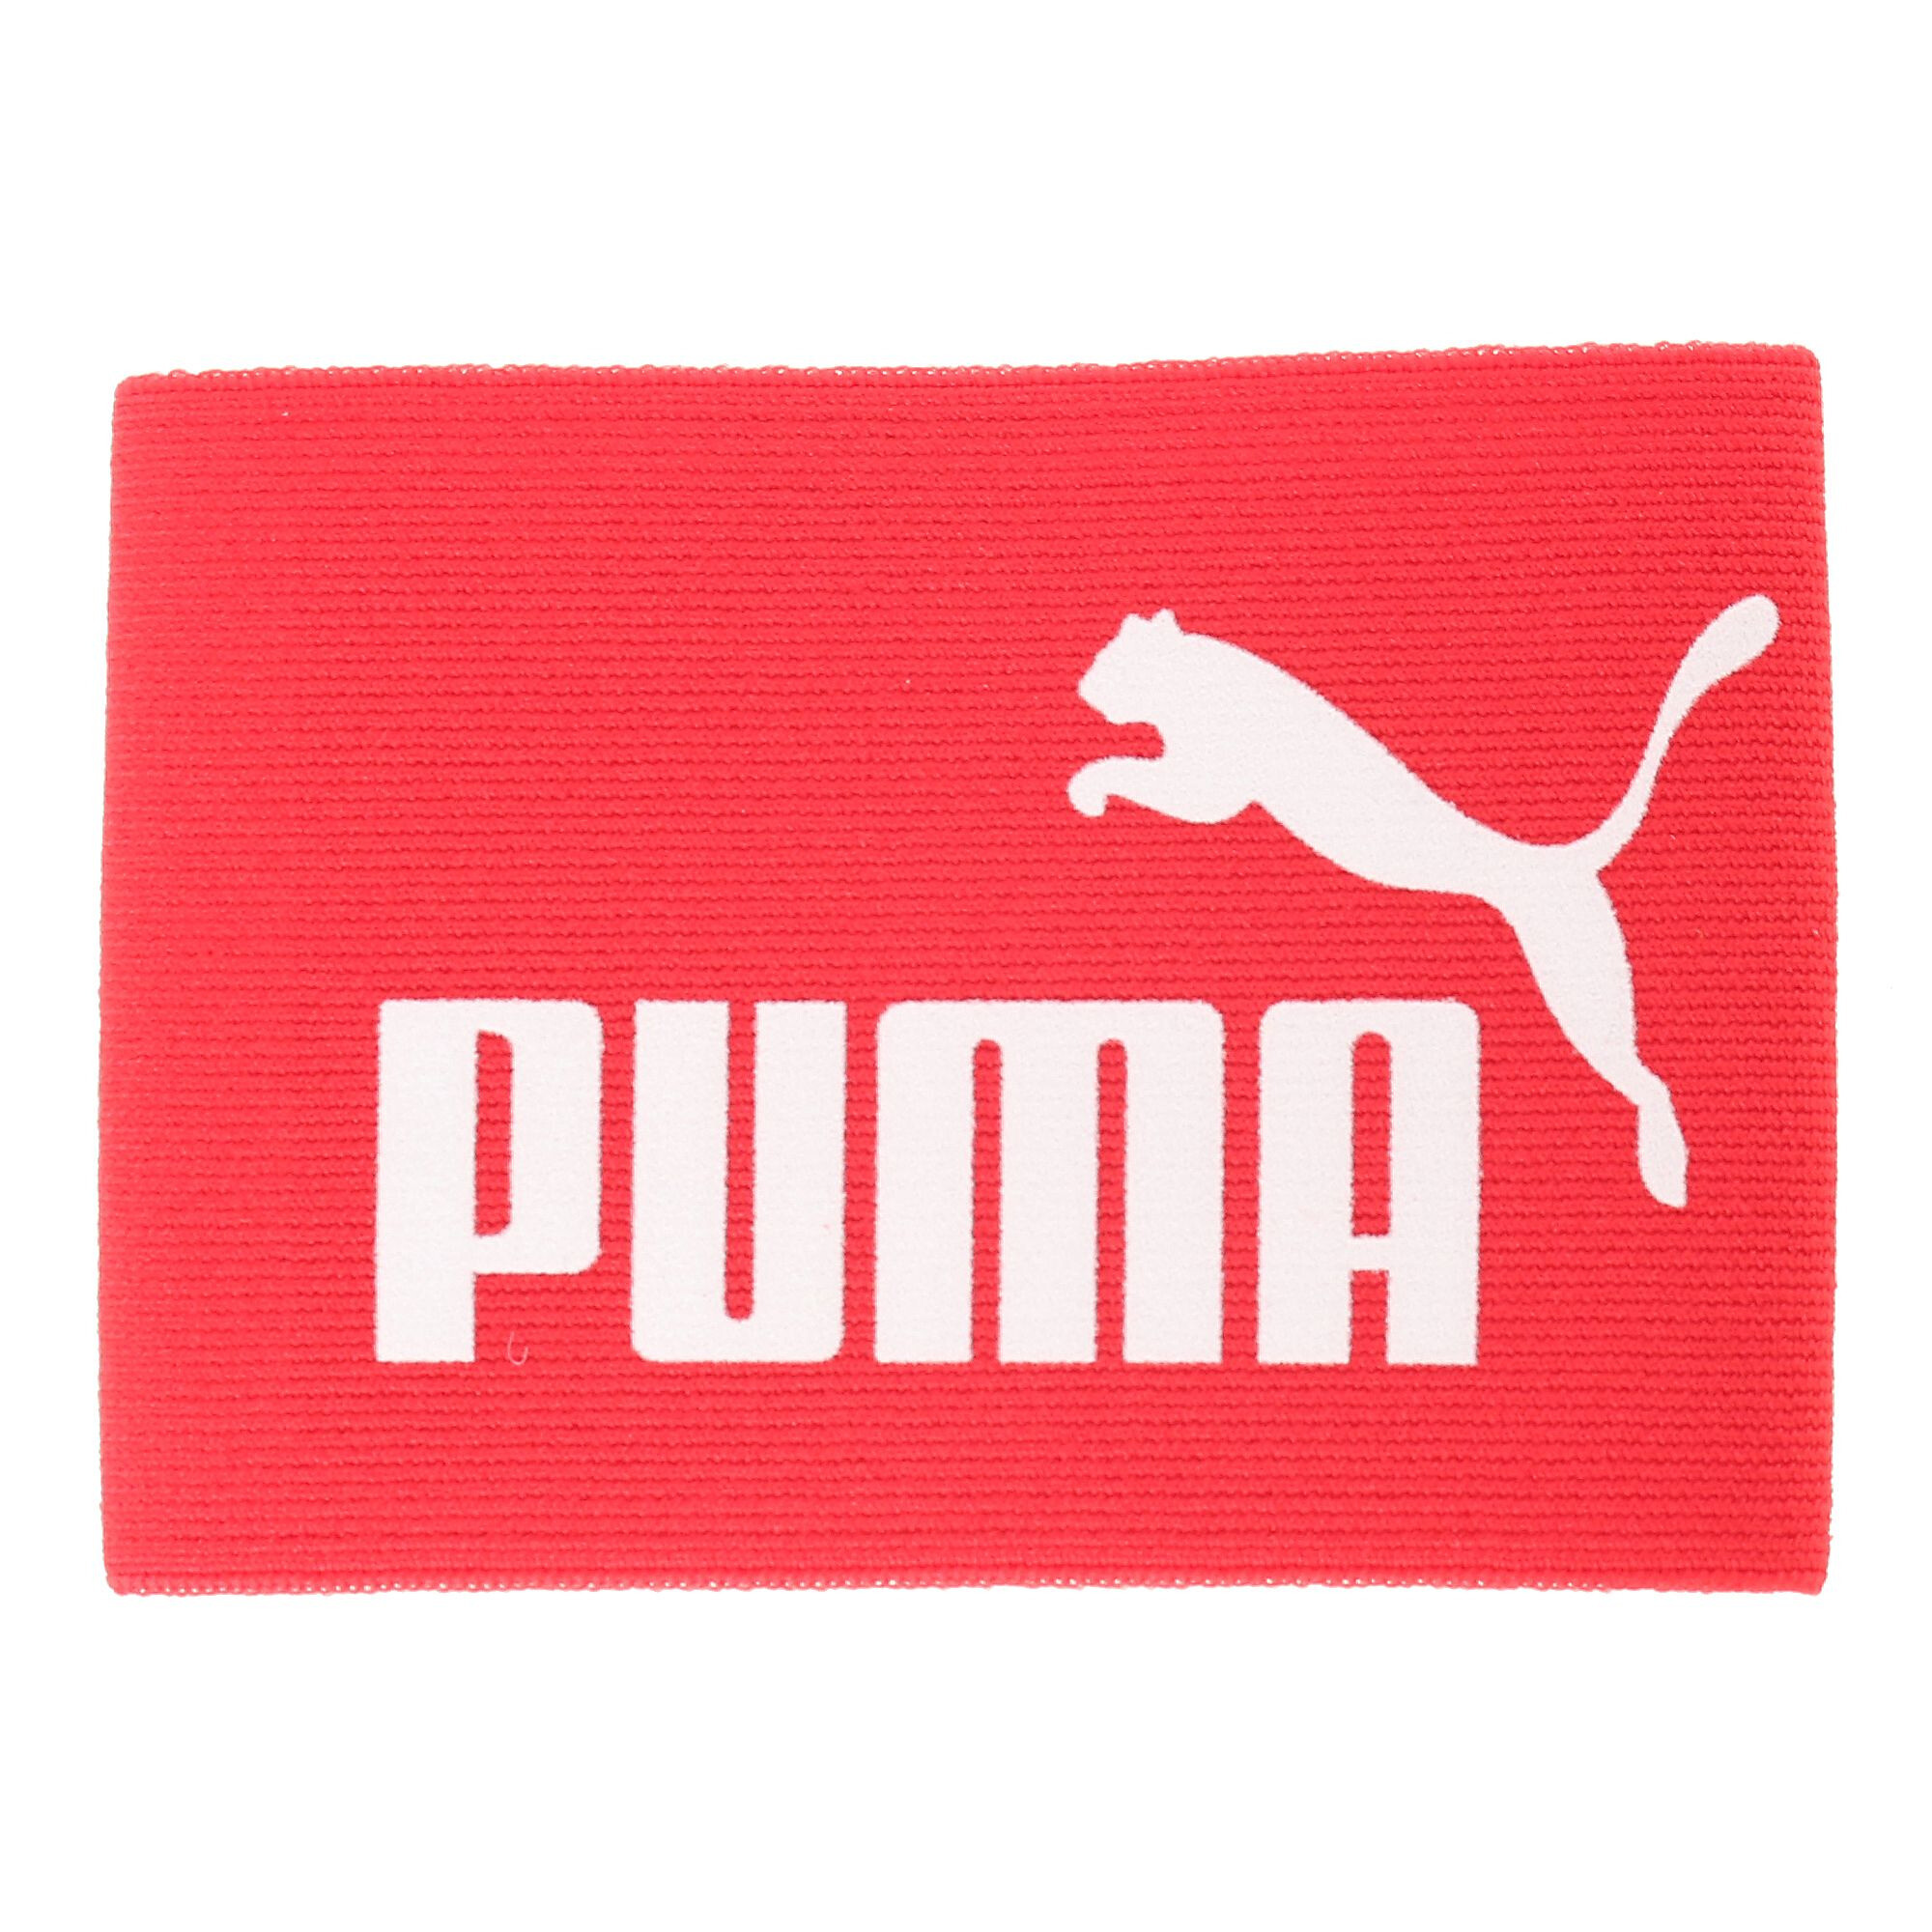  プーマ キャプテンズ アームバンド J メンズ puma red-white ｜PUMA.com